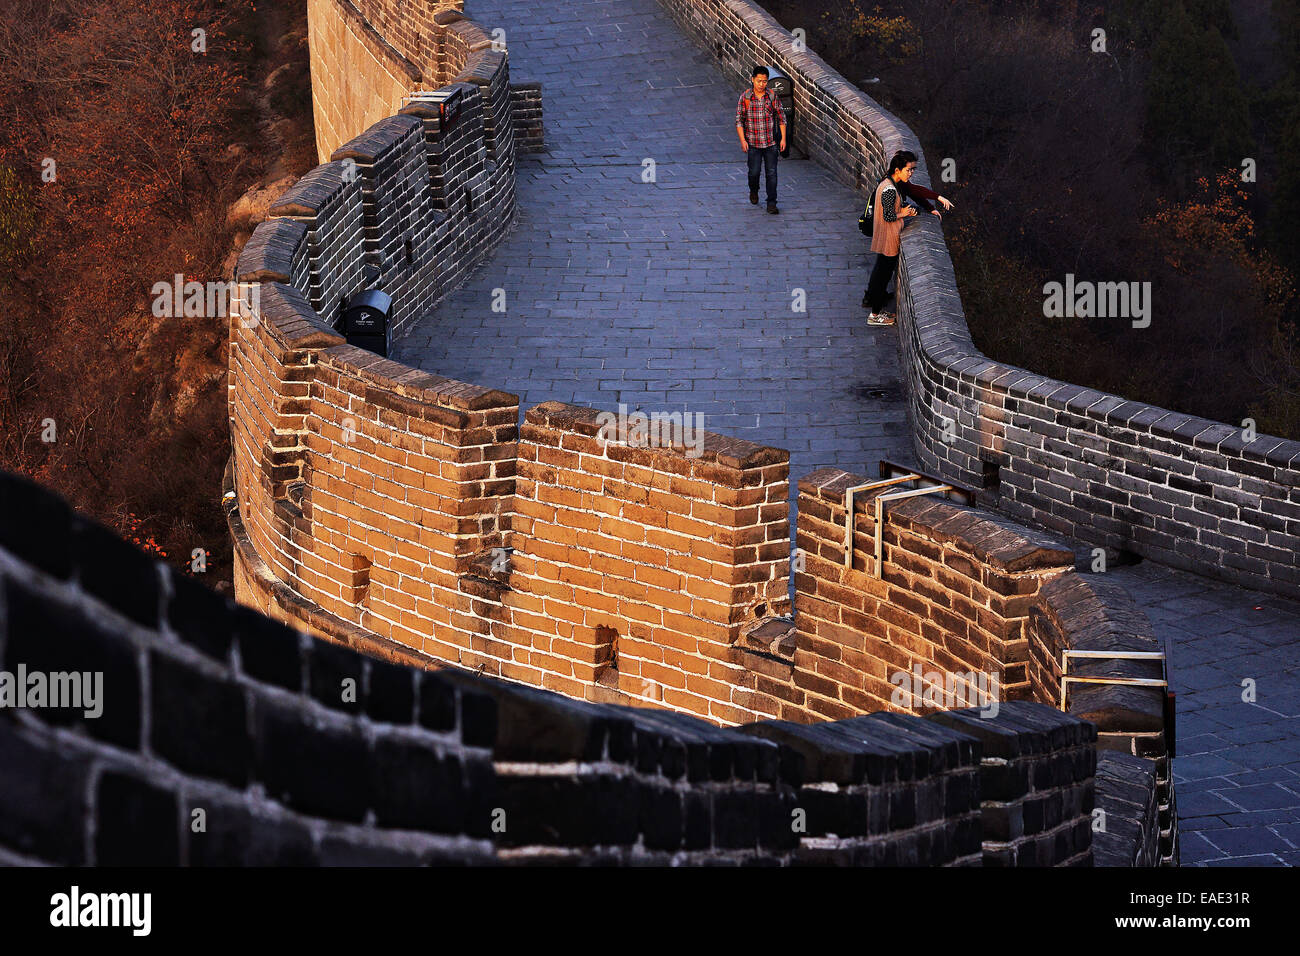 La Grande Muraglia della Cina sorge al tramonto sopra il paesaggio circostante coperto dallo smog presso Badaling, circa 70 chilometri a nord-ovest di Pechino nella contea di Yanqing, Cina. La Grande Muraglia si estende attraverso la storica i confini del nord della Cina e con esso è Foto Stock